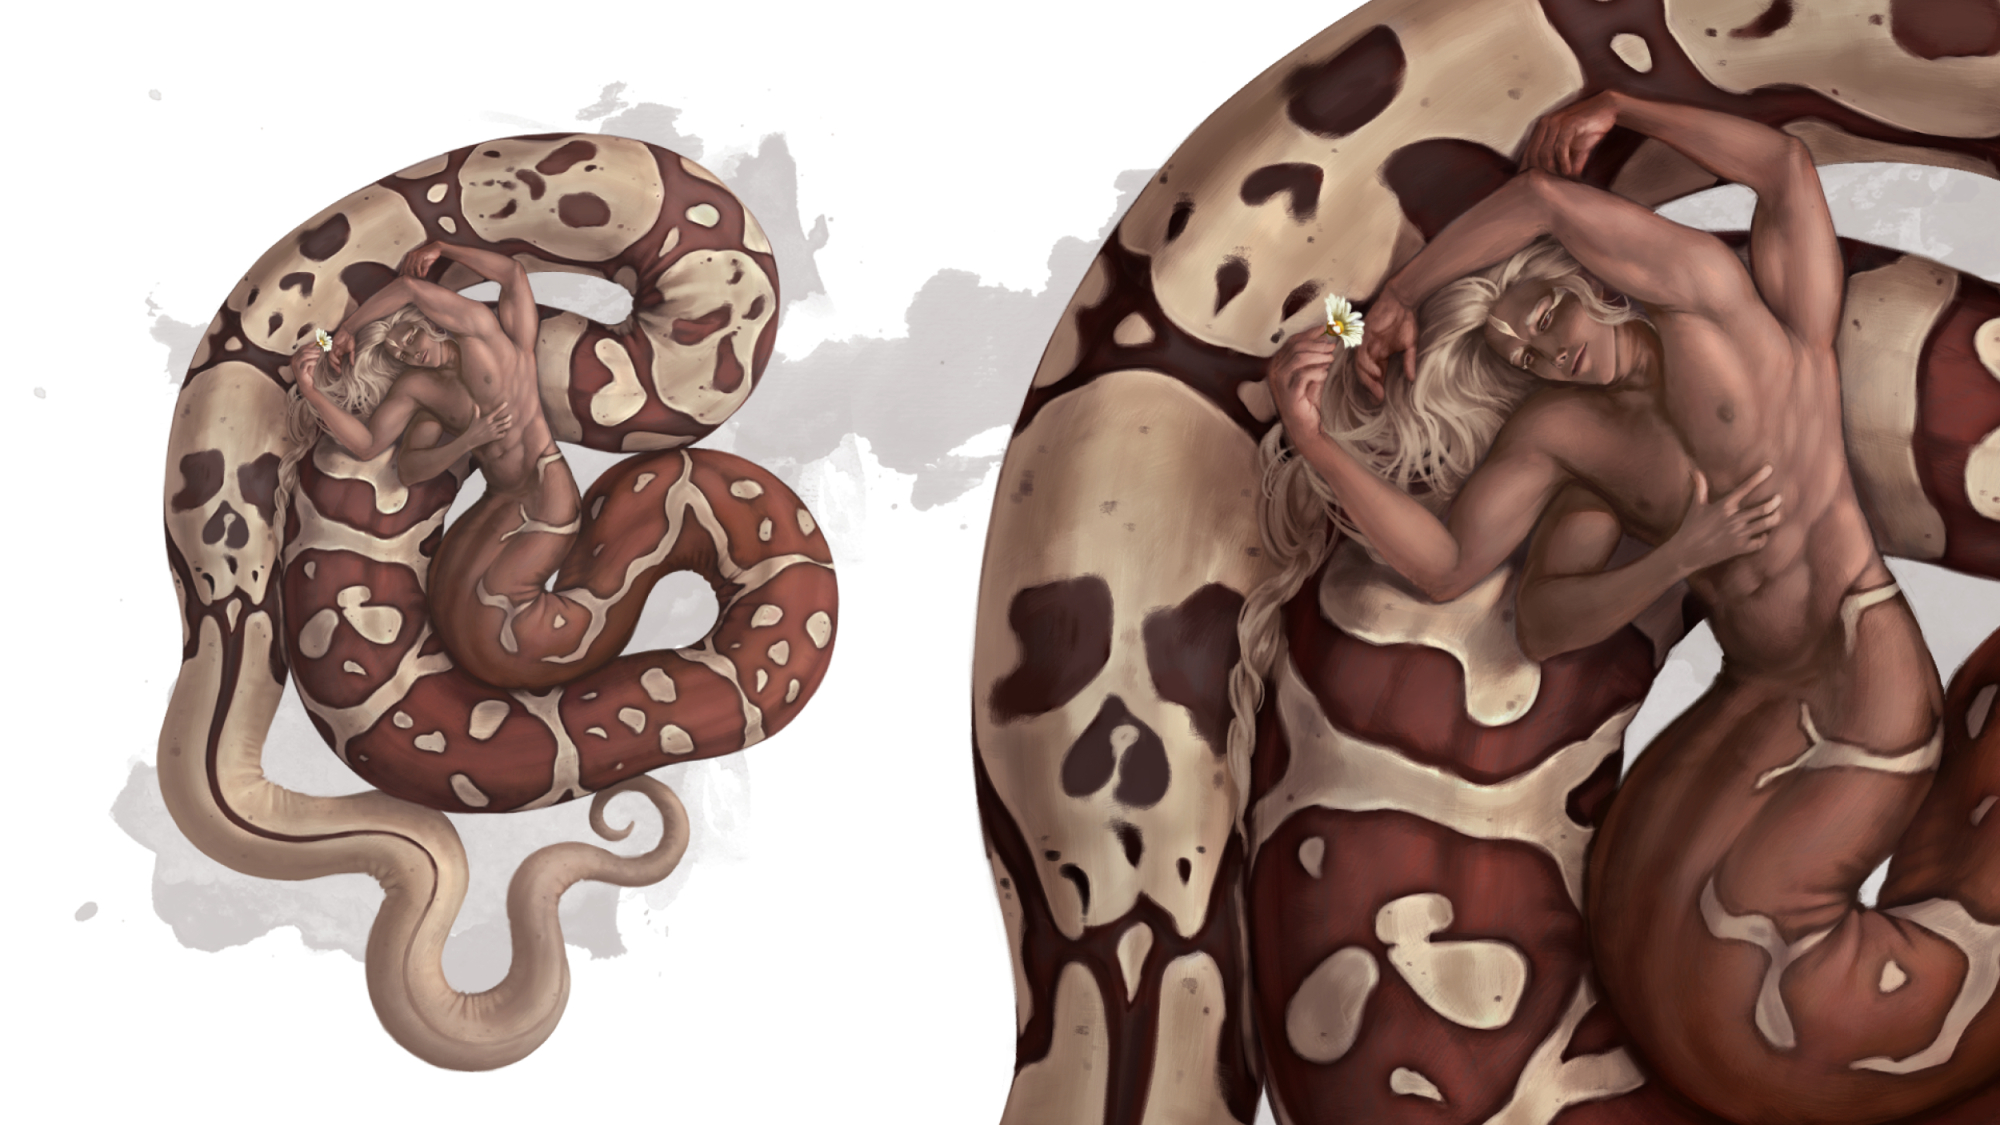 BA Games Art work by Anna Kissh. Final design of a snake-man hybrid.